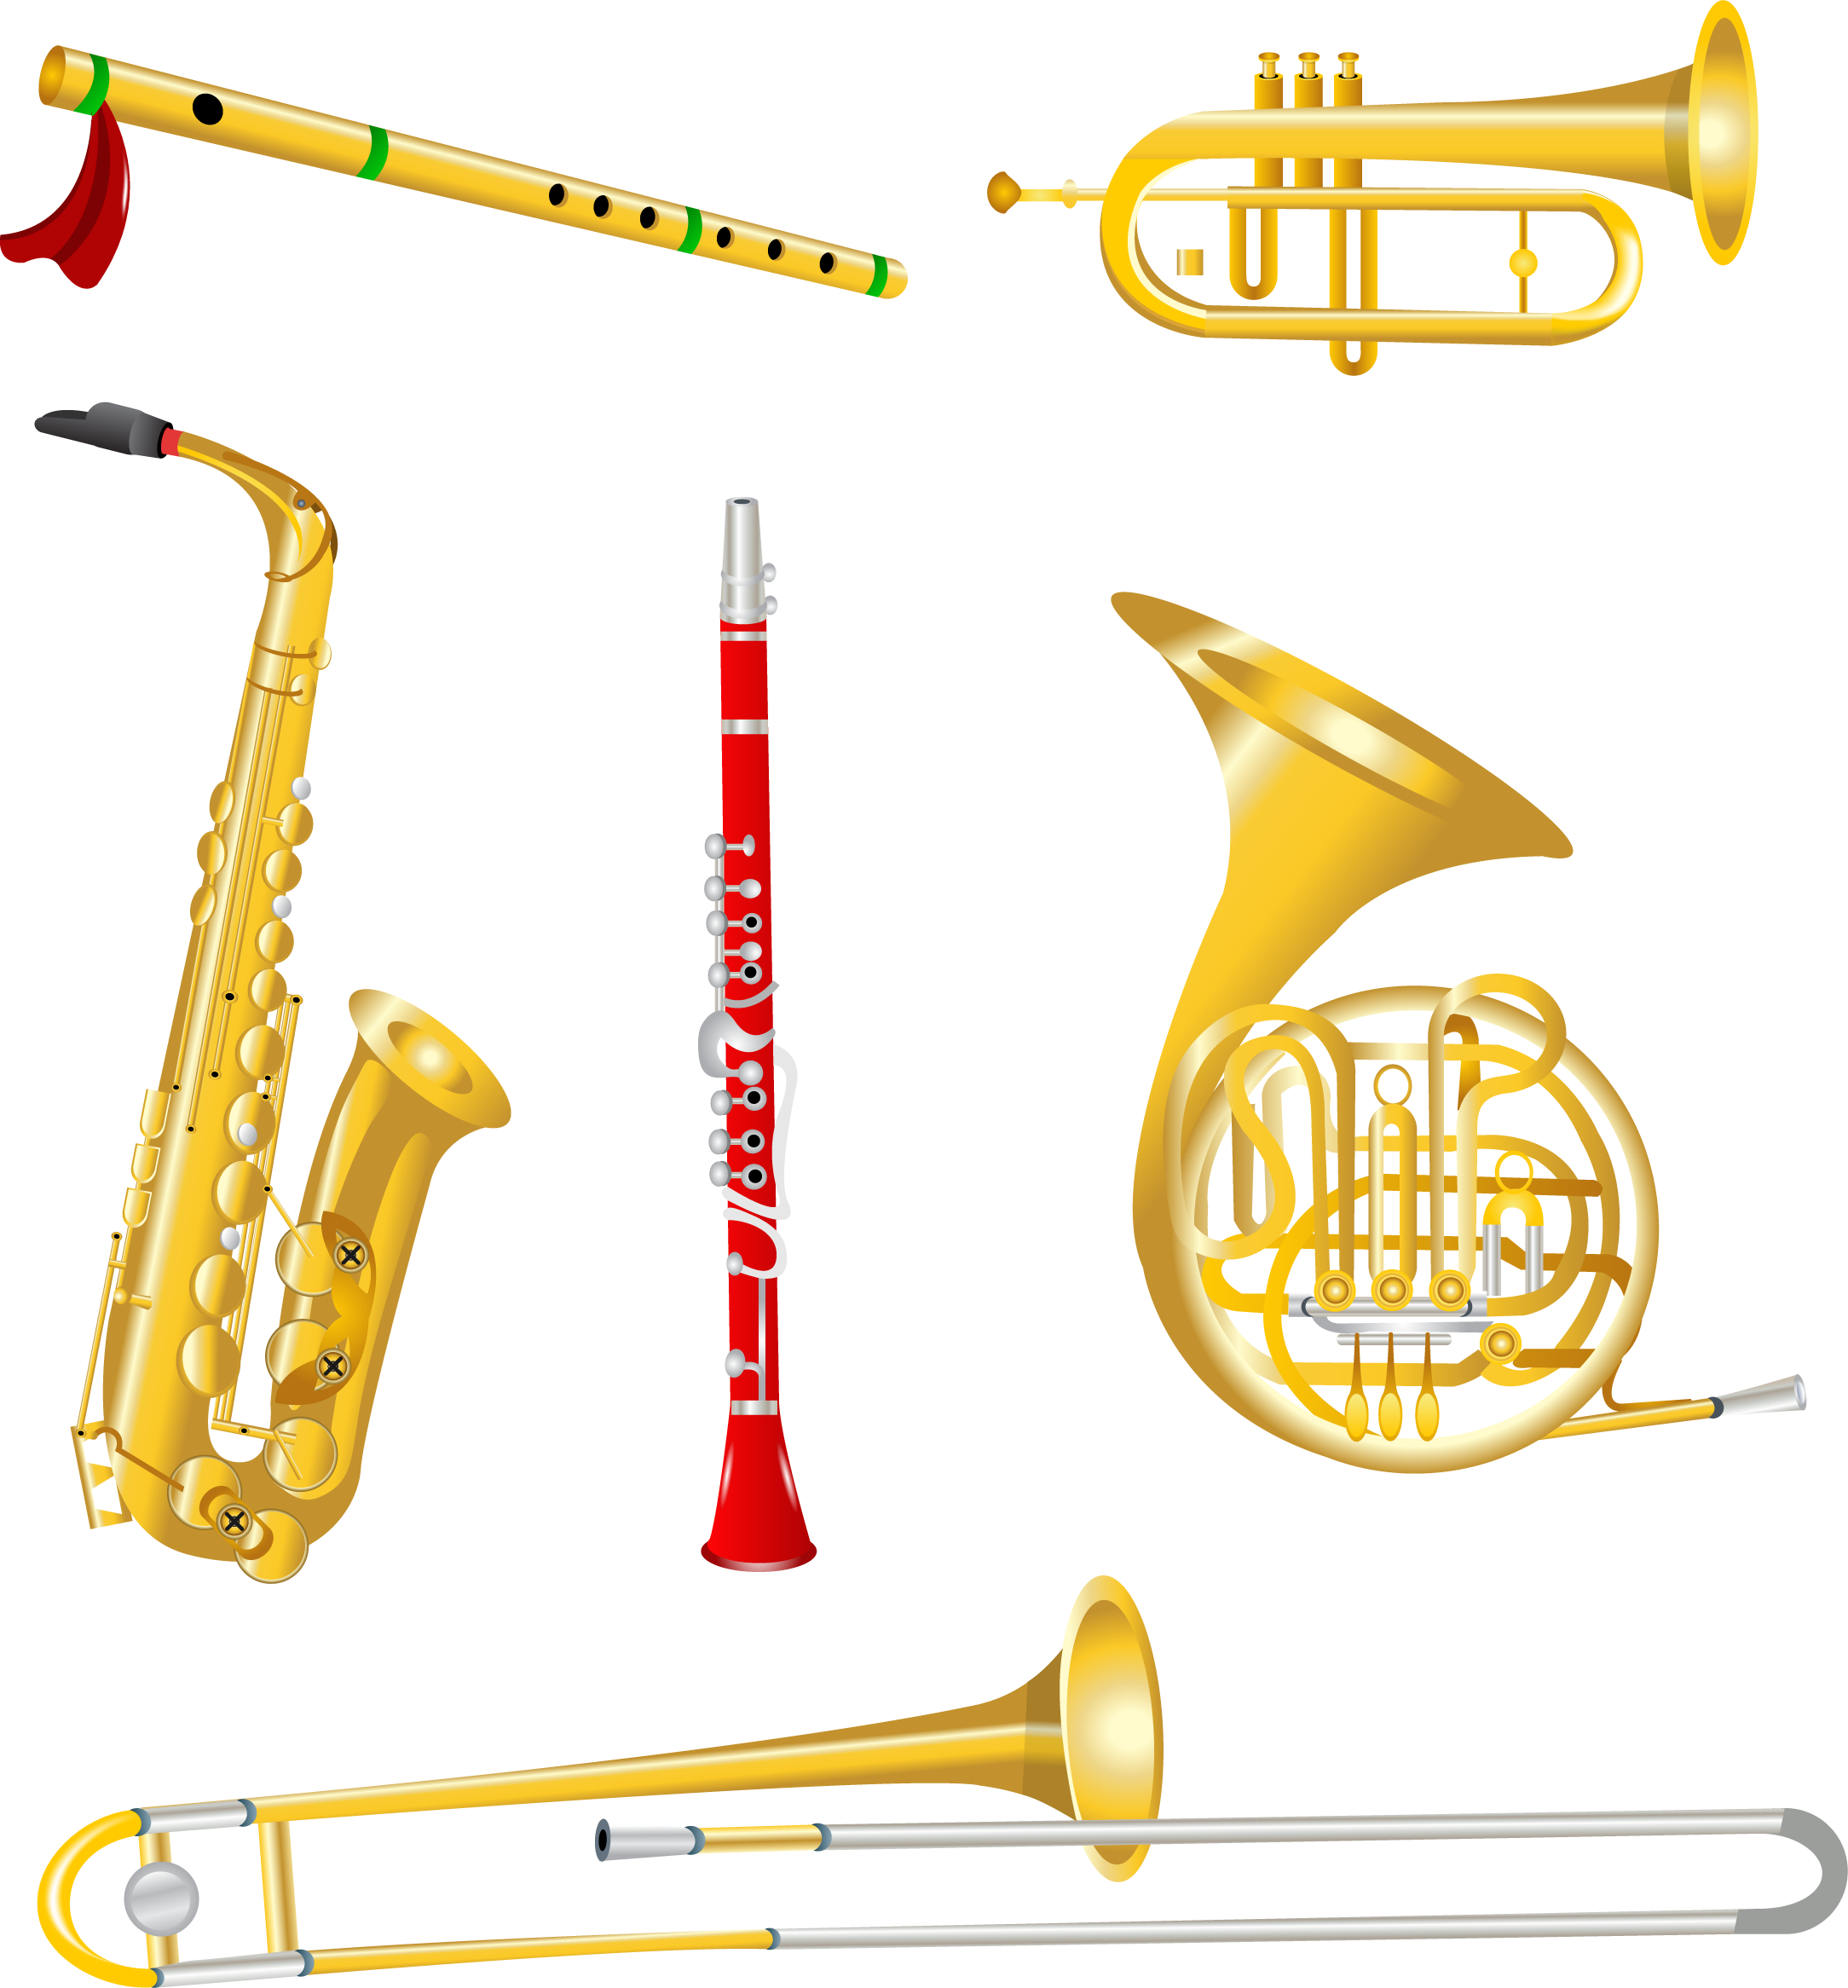 Музыка трубочка. Музыкальные инструменты духовые саксофон труба тромбон. Труба саксофон тромбон. Кларнет, тромбон, саксофон, труба. Медно духовые инструменты саксофон.